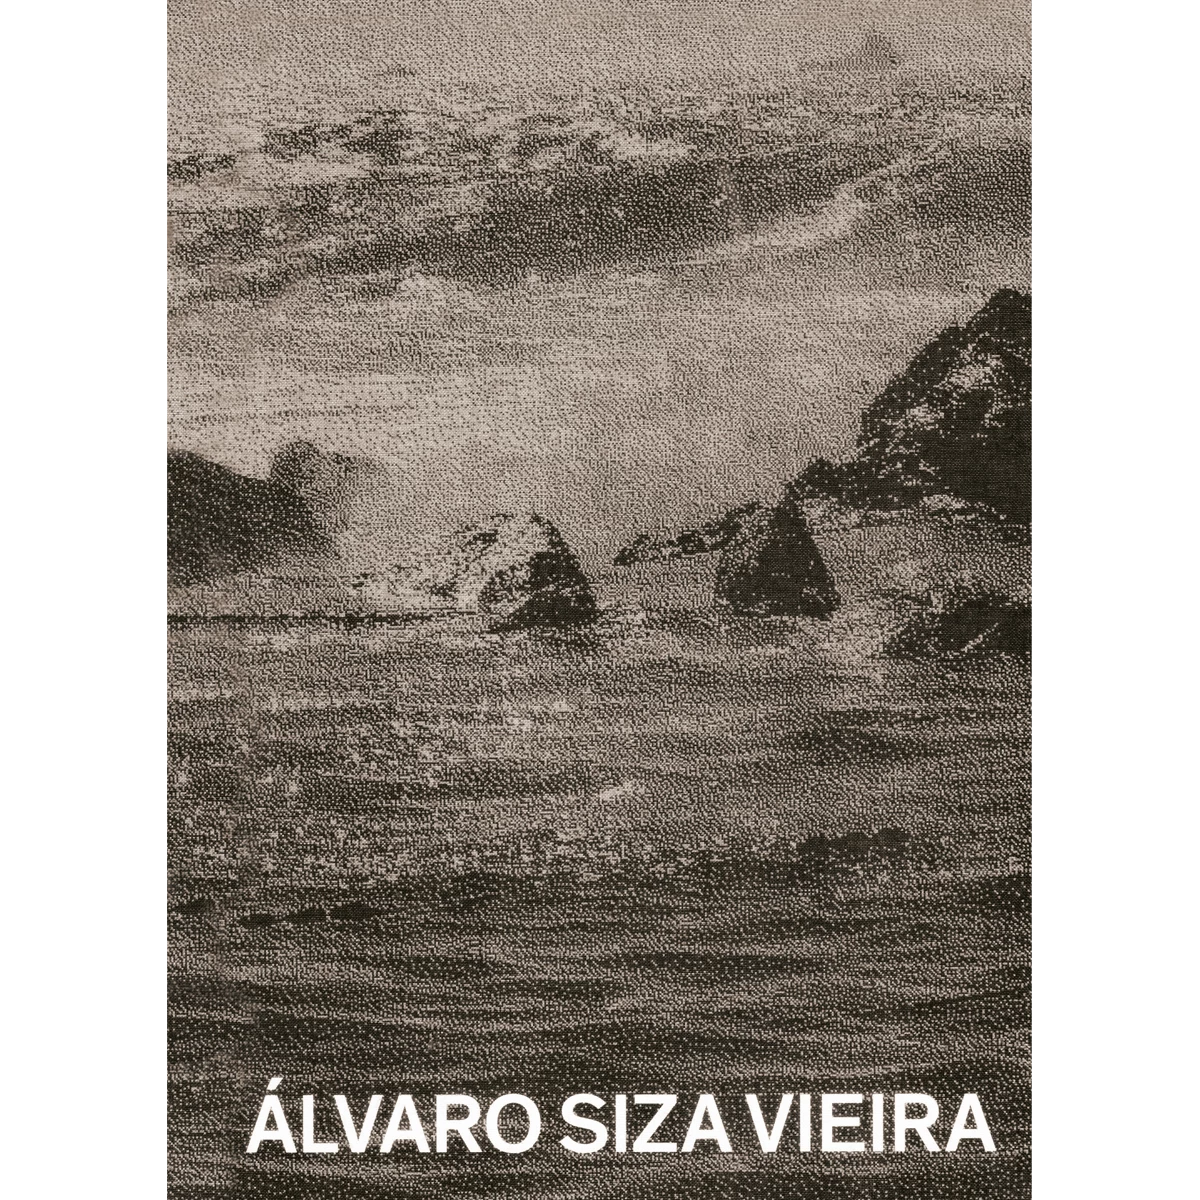 Álvaro Siza: piscinas en el mar